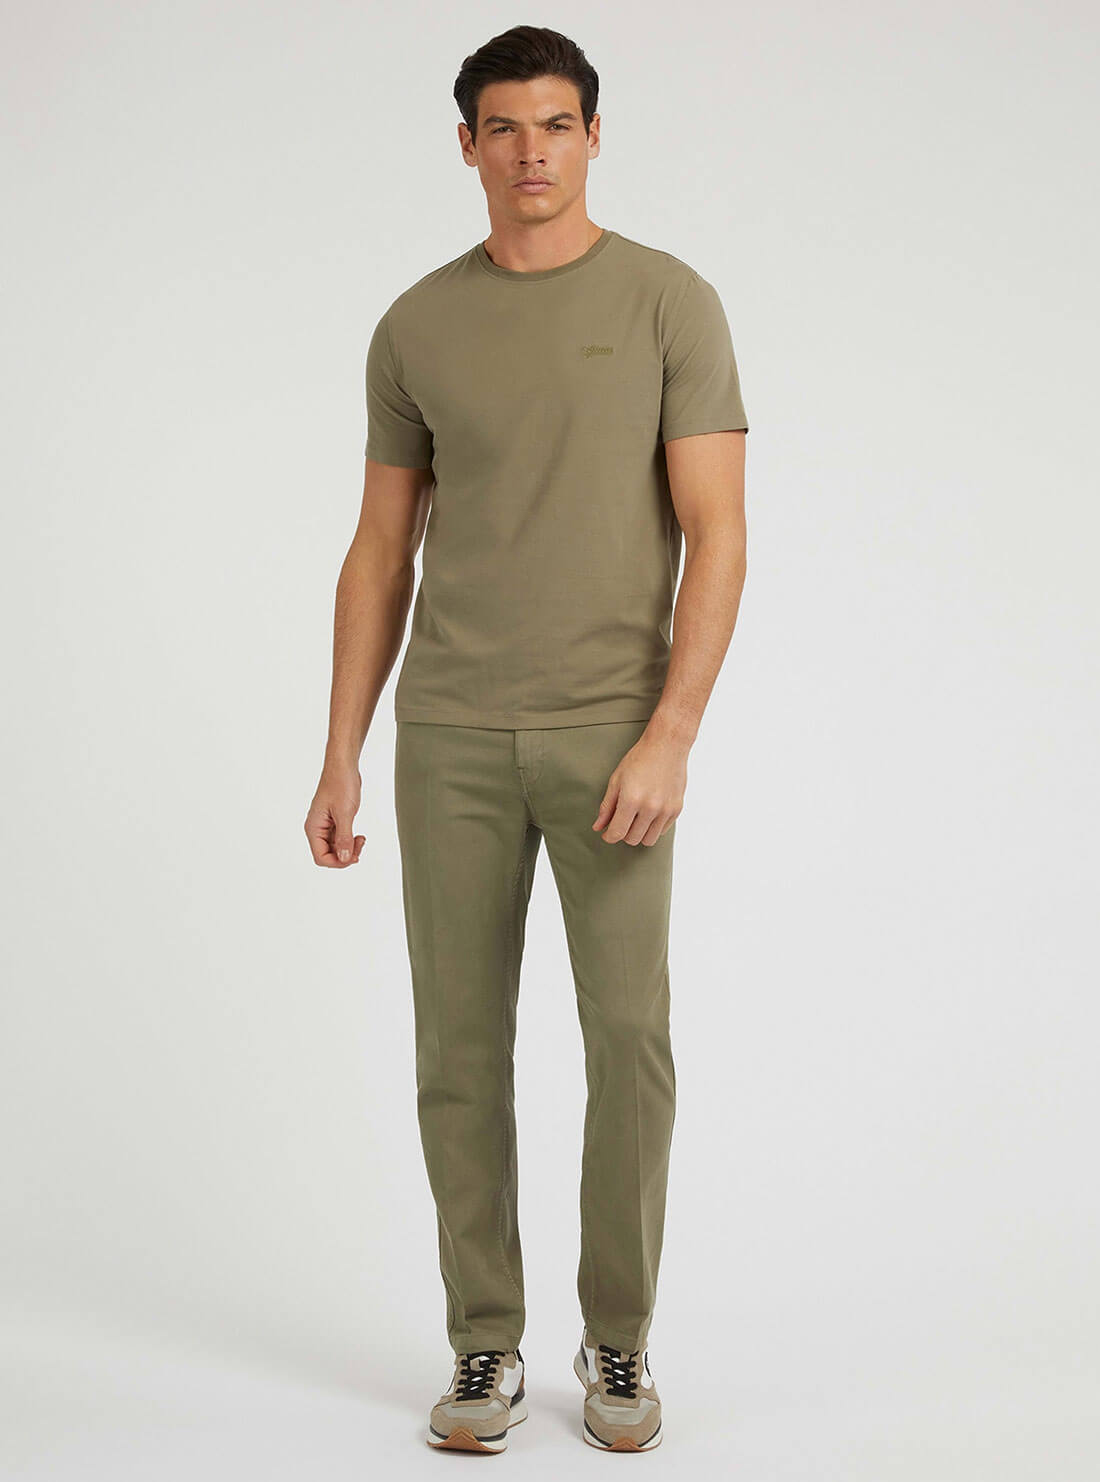 Desert Green Pima Logo T-Shirt | GUESS men's apparel | full view